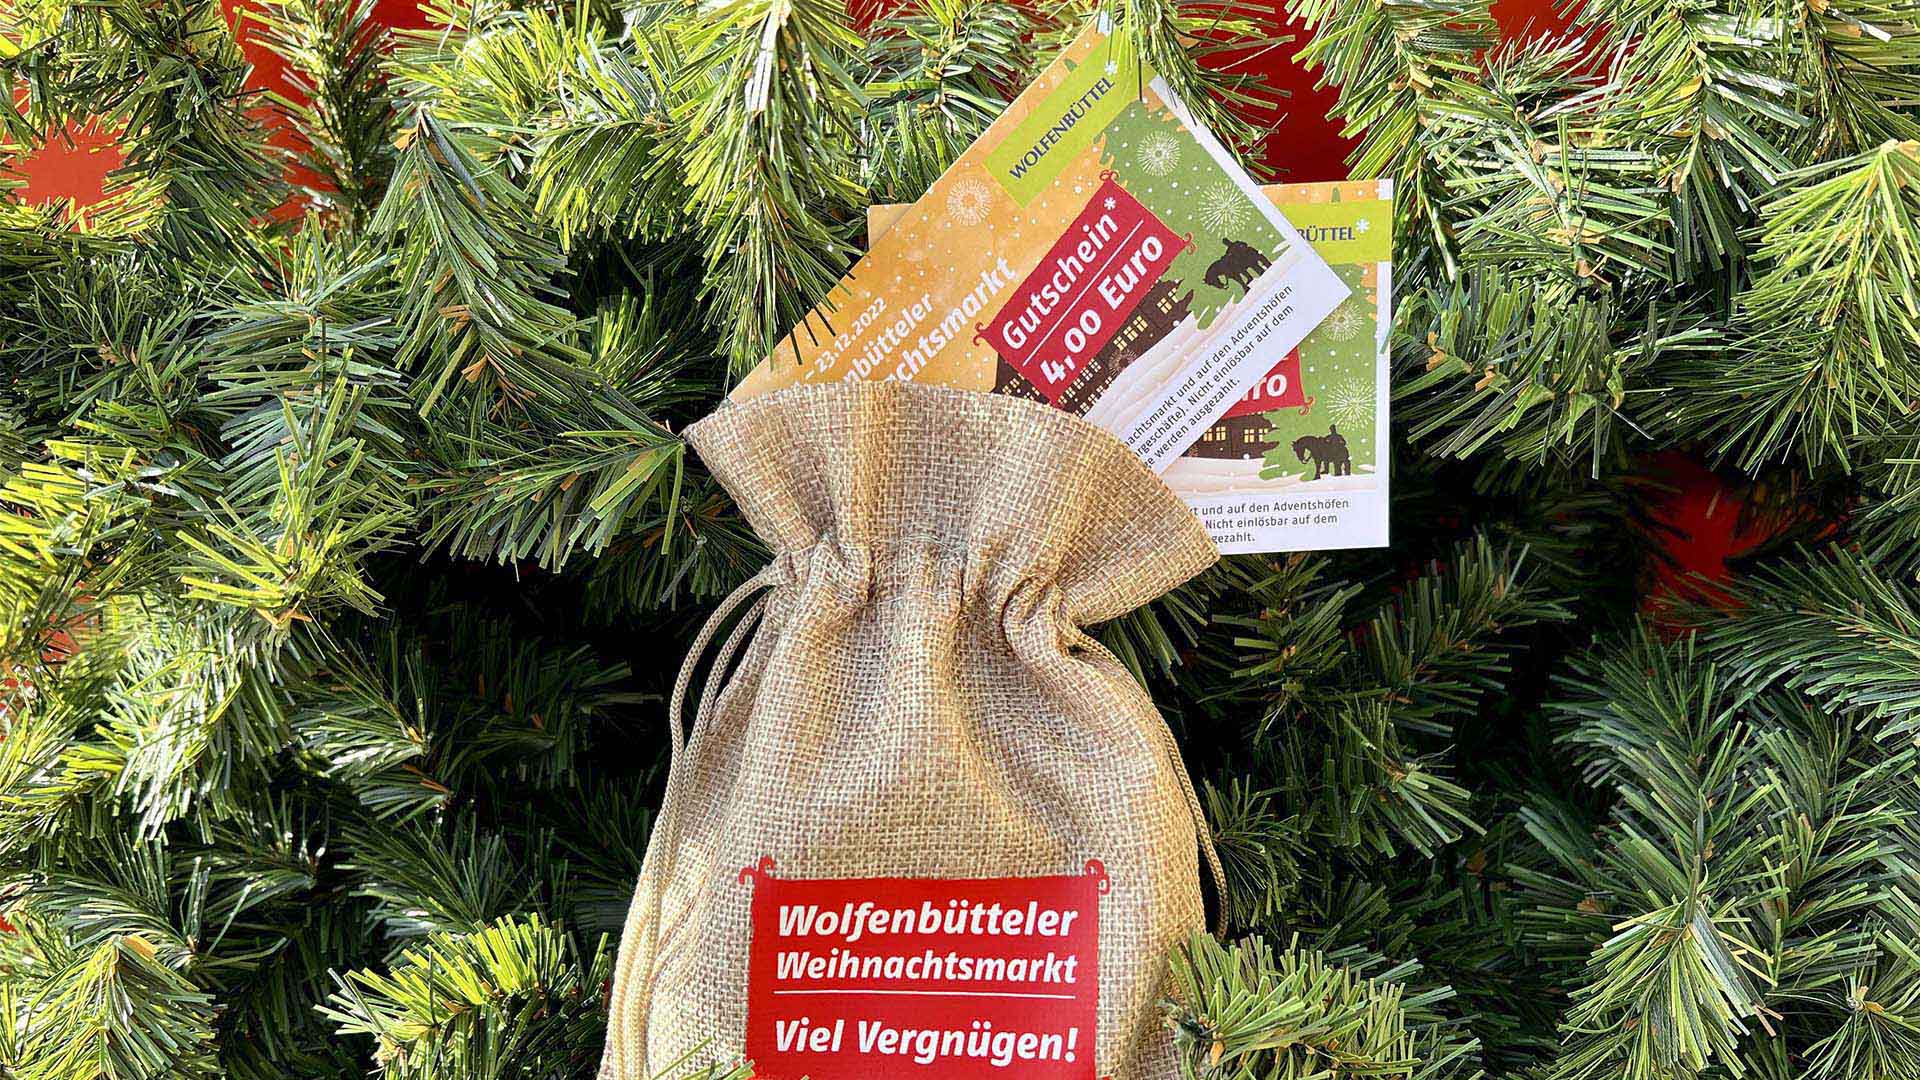 Auf einem Tannenzweig liegt ein Jutesäckchen mit Gutscheinen und der Aufschrift "Wolfenbütteler Weihnachtsmarkt - Viel Vergnügen!"